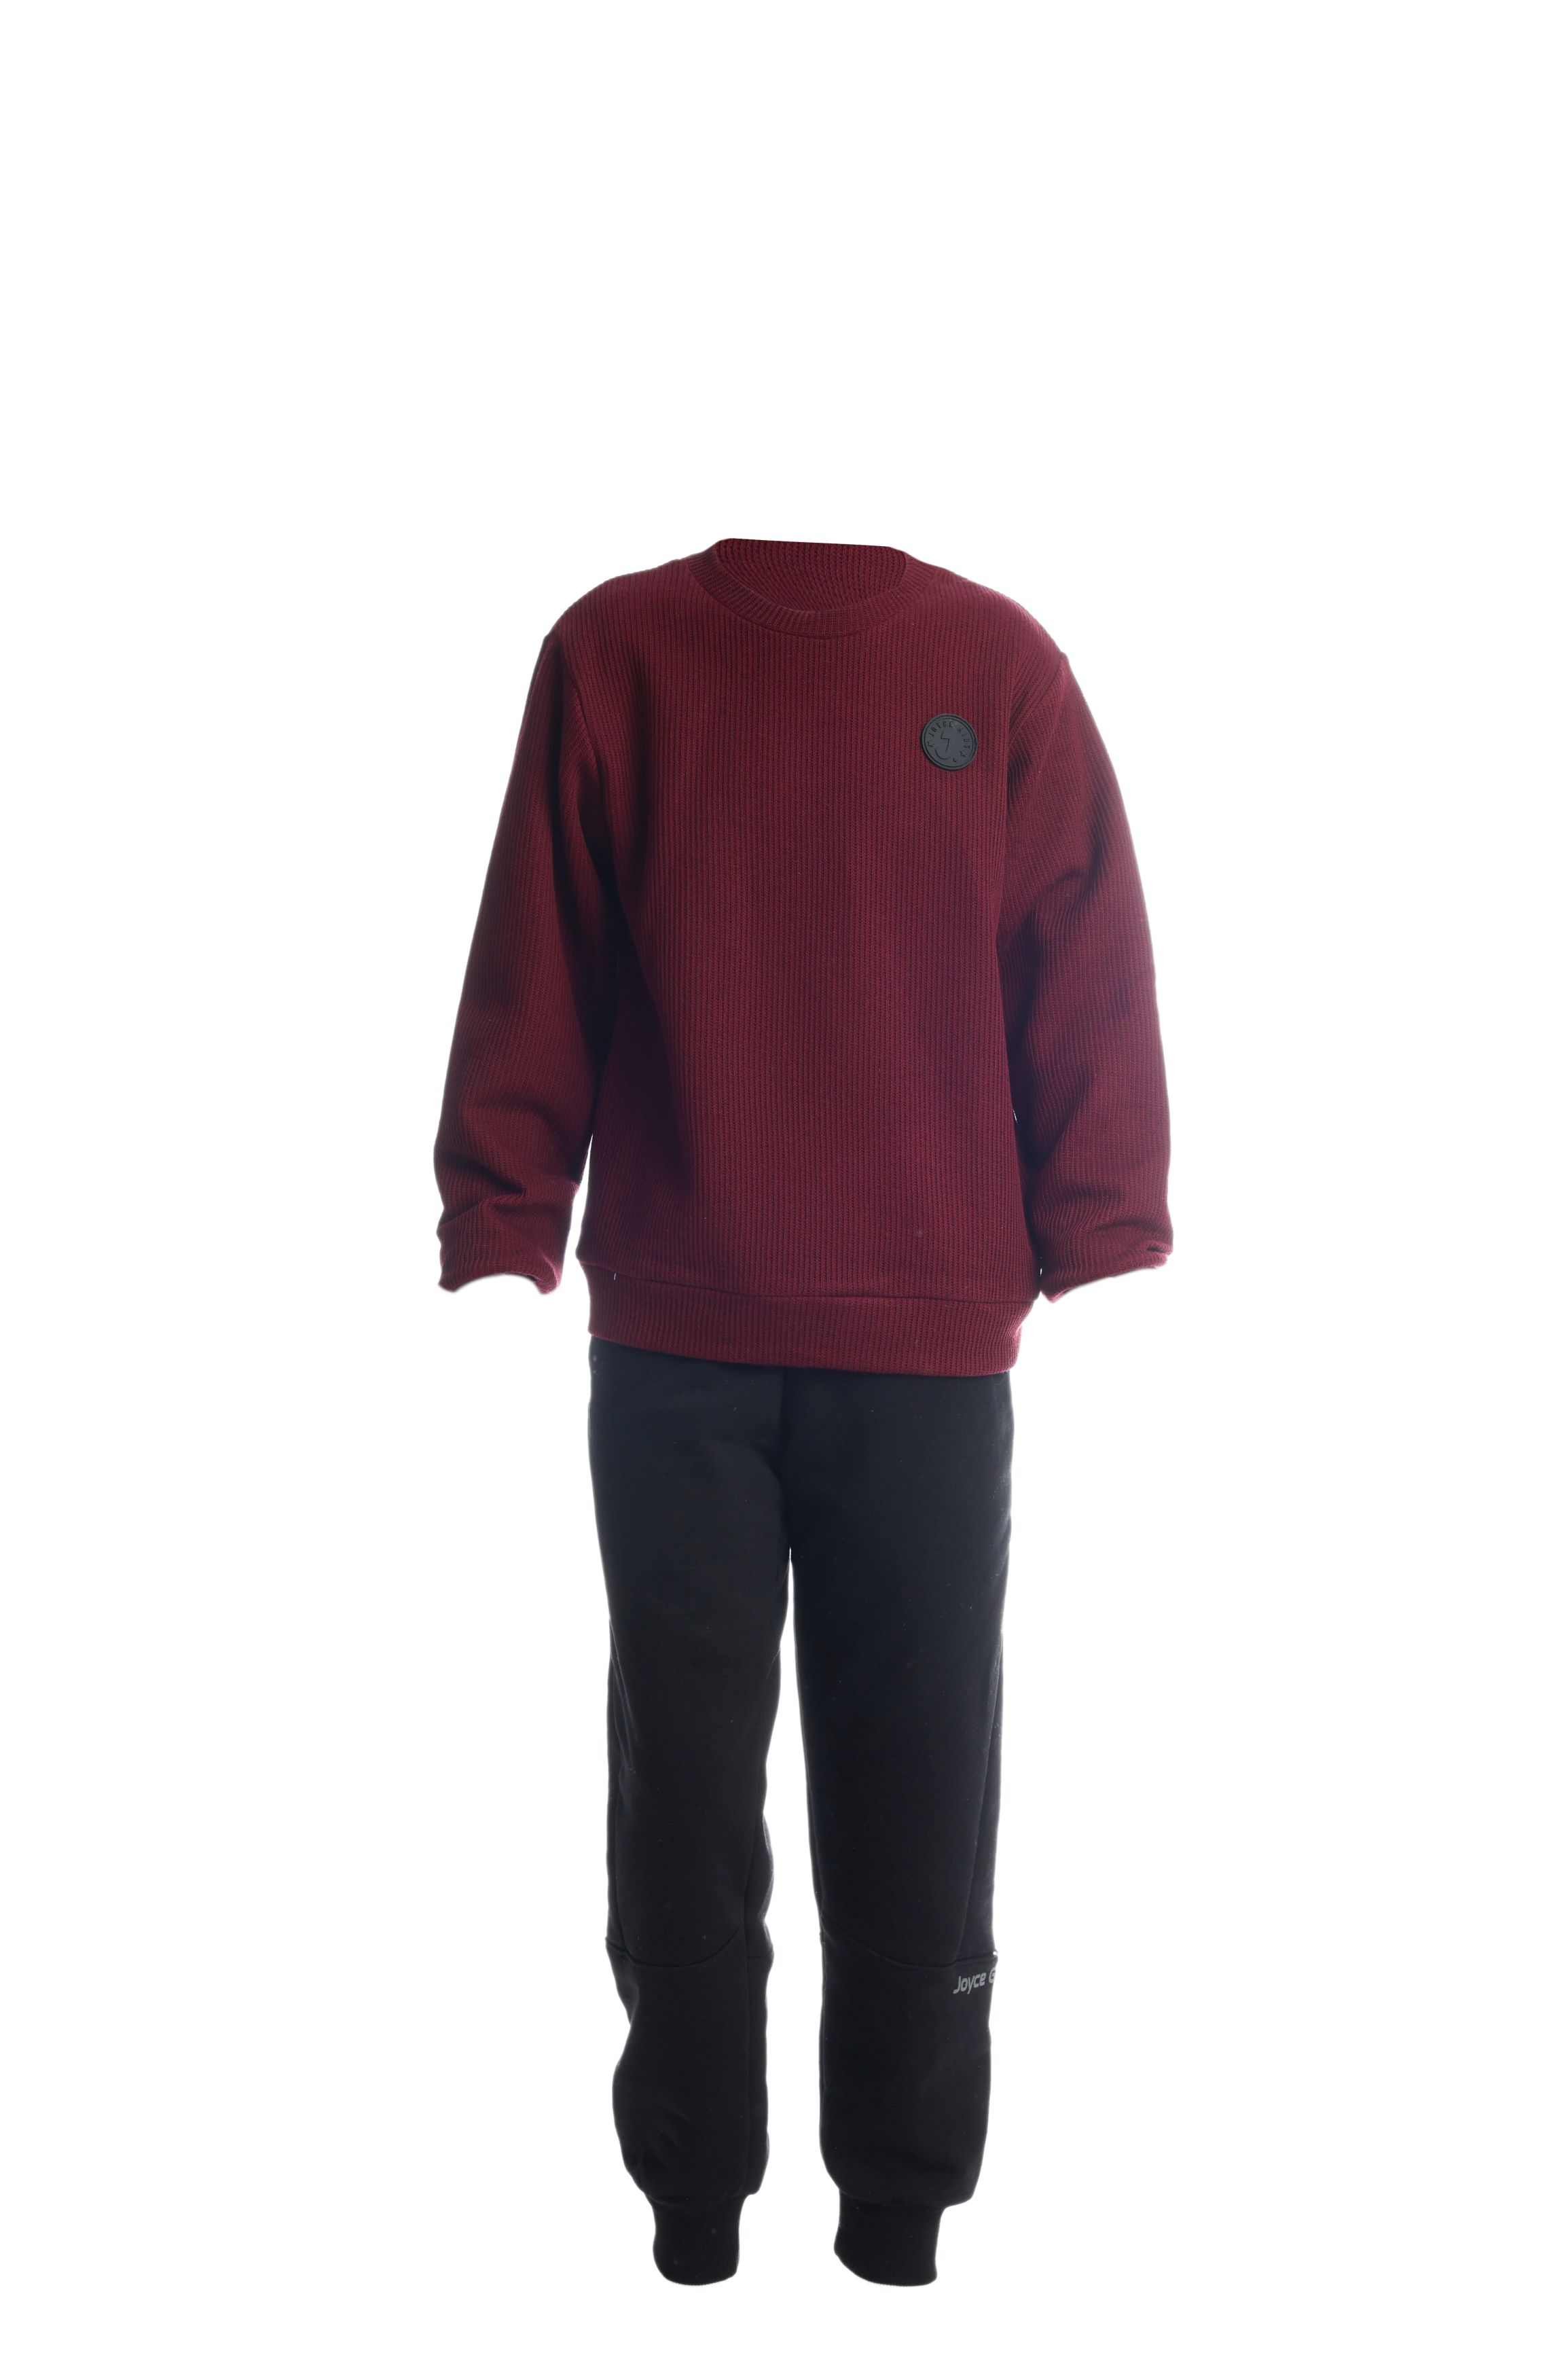 Chlapecké bavlněné tričko/svetr "TAB"/Zelená, vínová Barva: Vínová, Velikost: vel. 6 (114/120 cm)